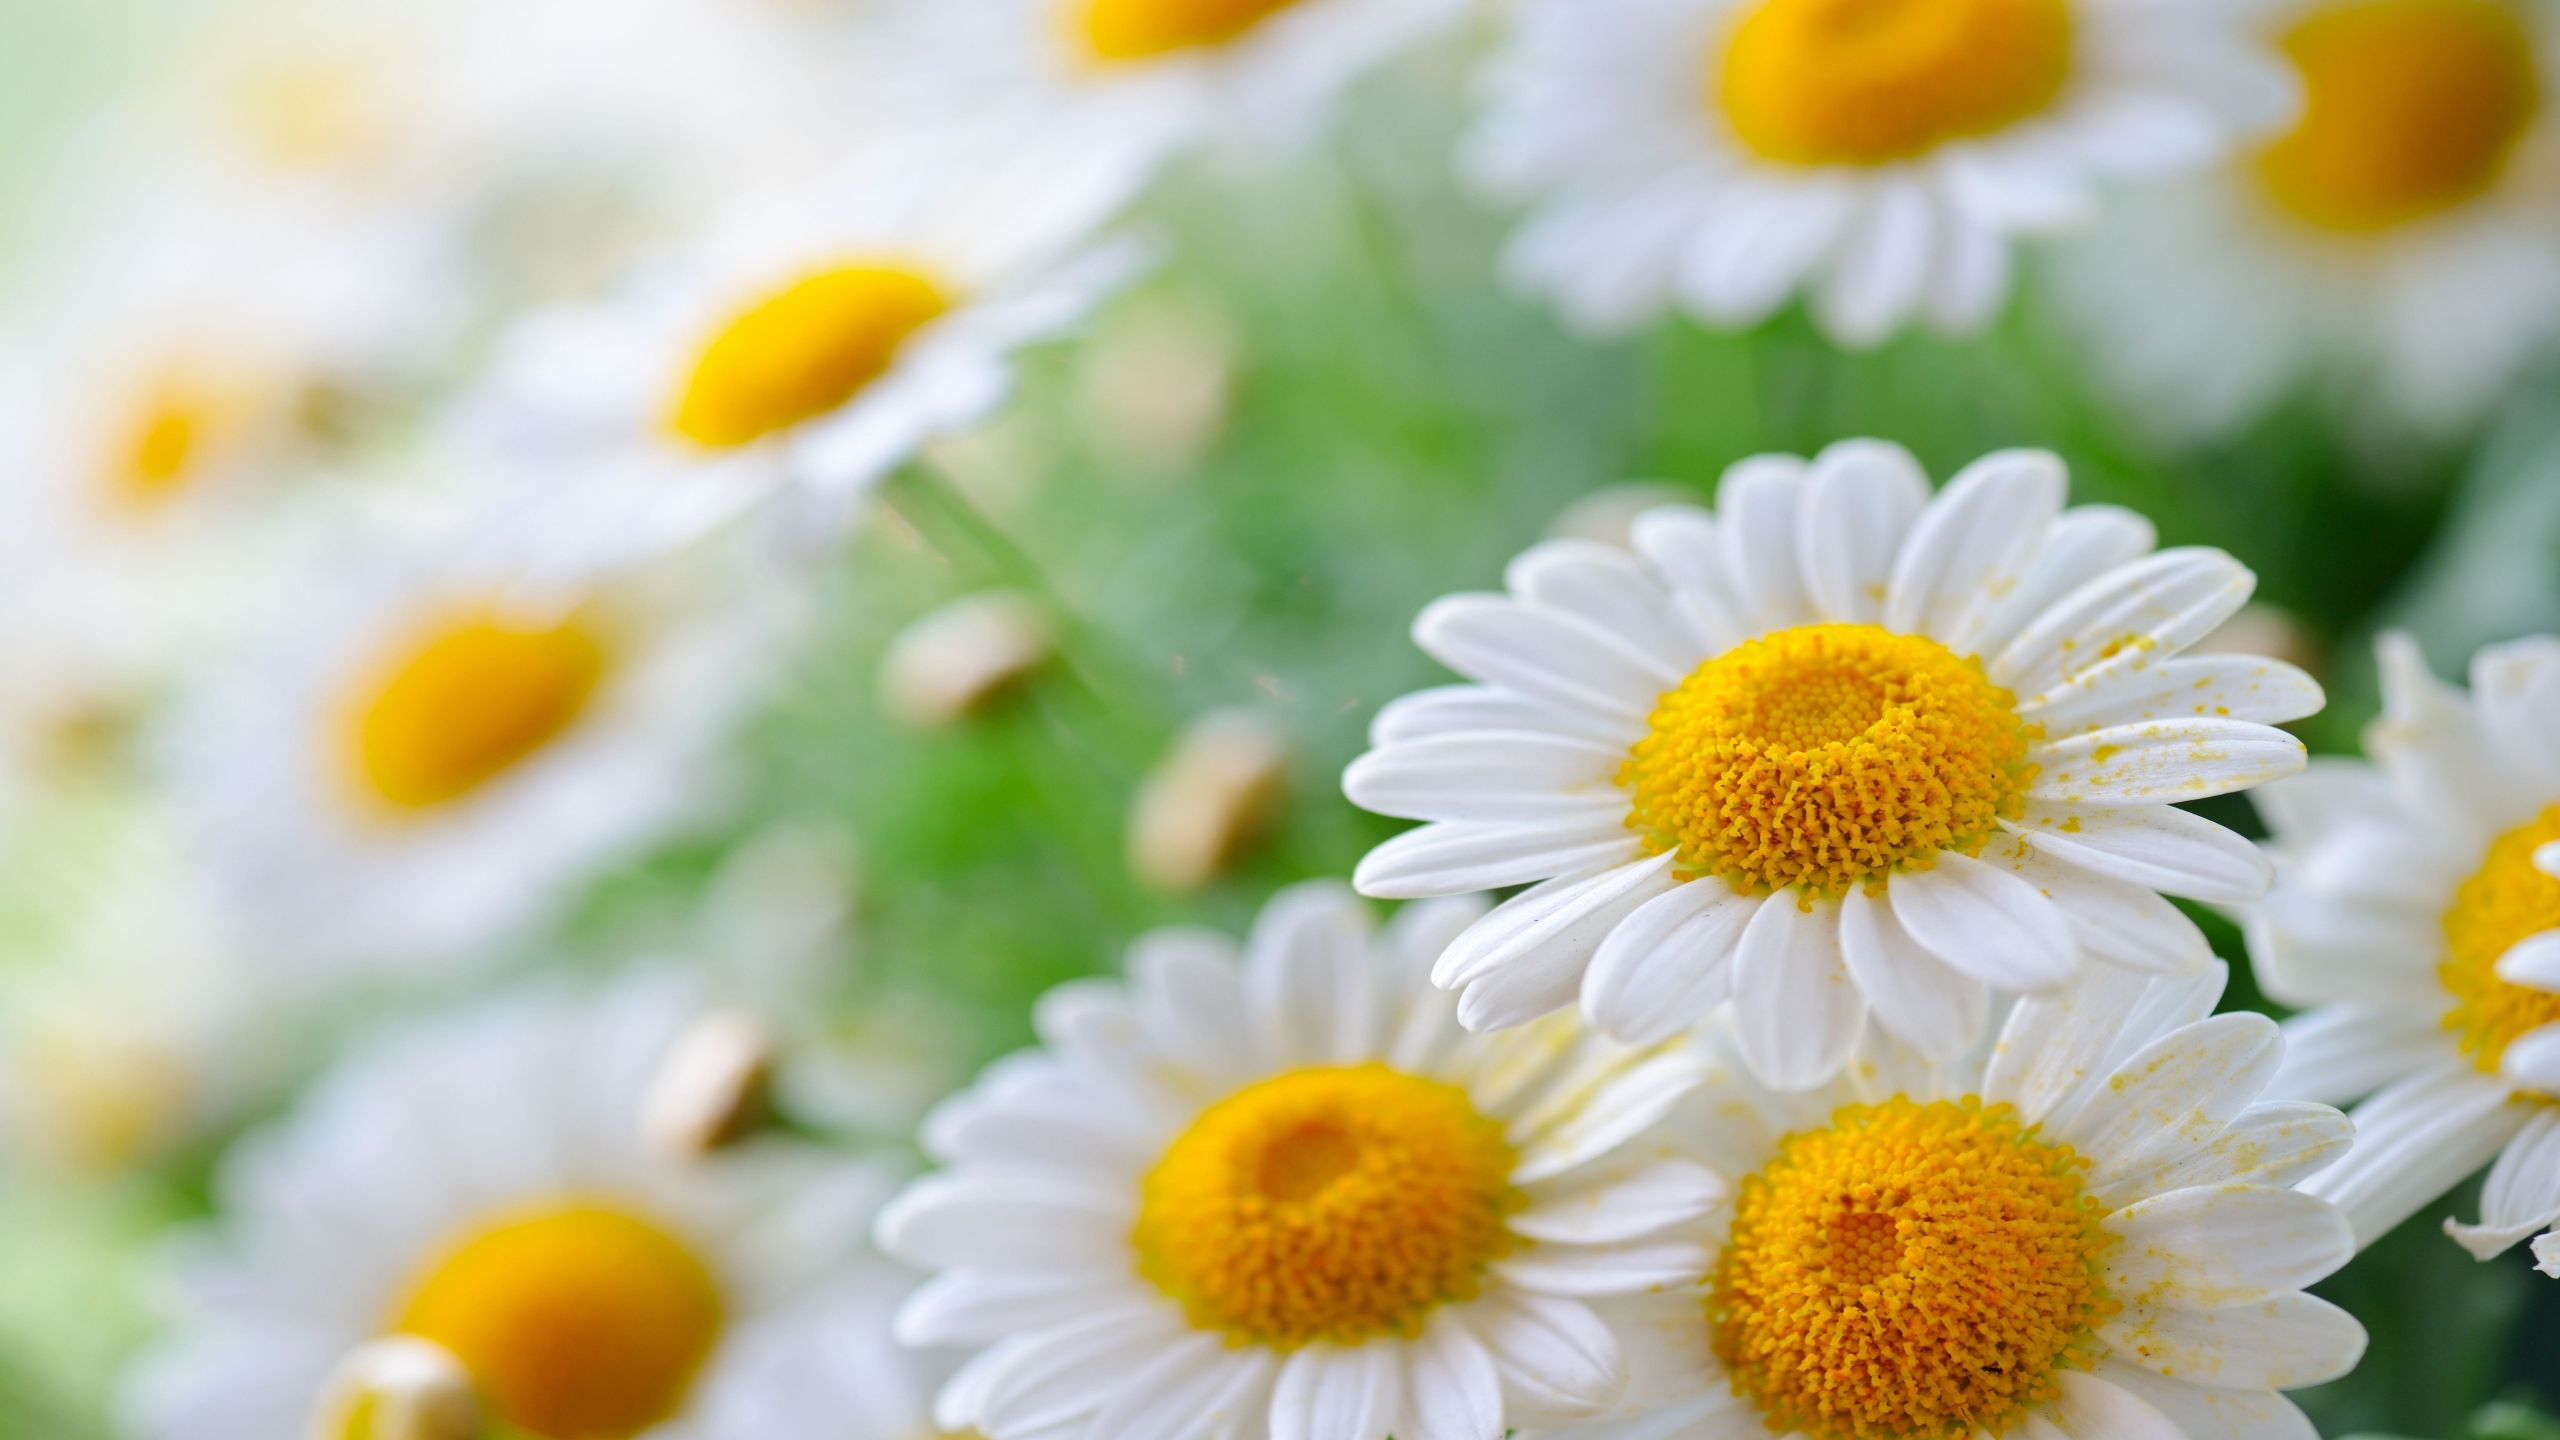 Daisy Flower for 2560 x 1440 HDTV resolution